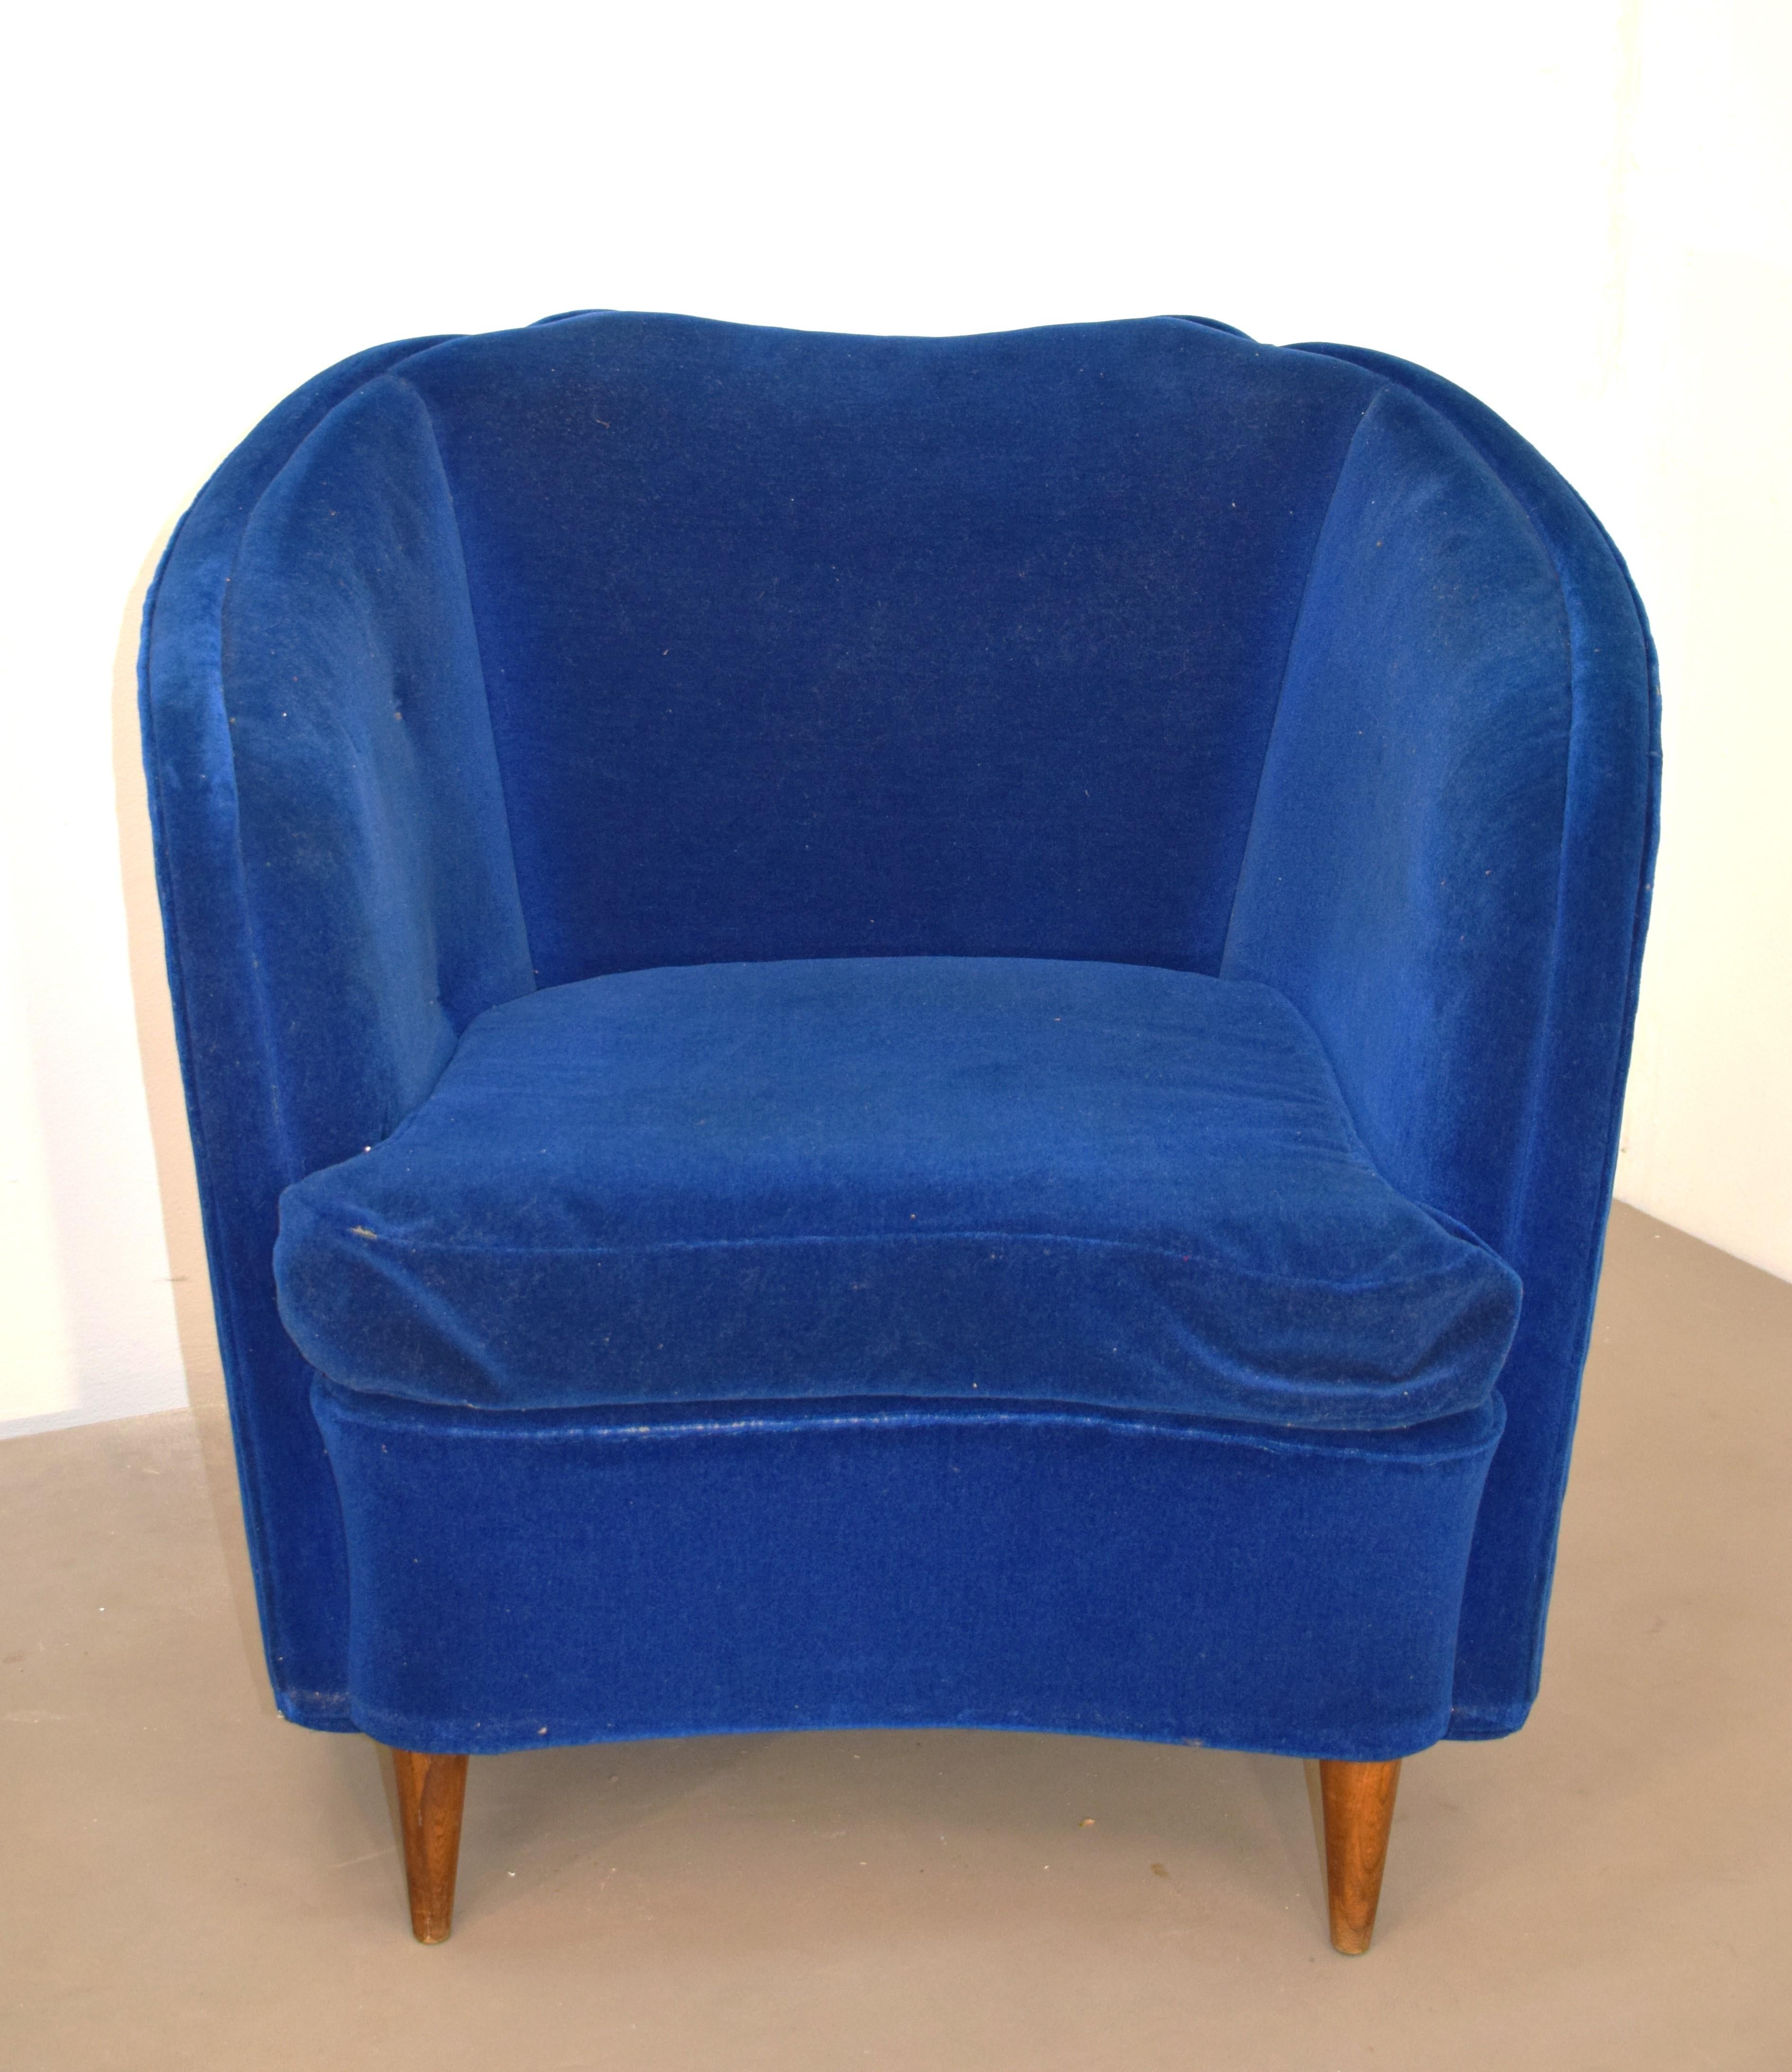 Paire de fauteuils italiens, années 1950.
Dimensions : H=76 cm ; L= 82 cm ; P= 80 cm ; Siège H= 44 cm.